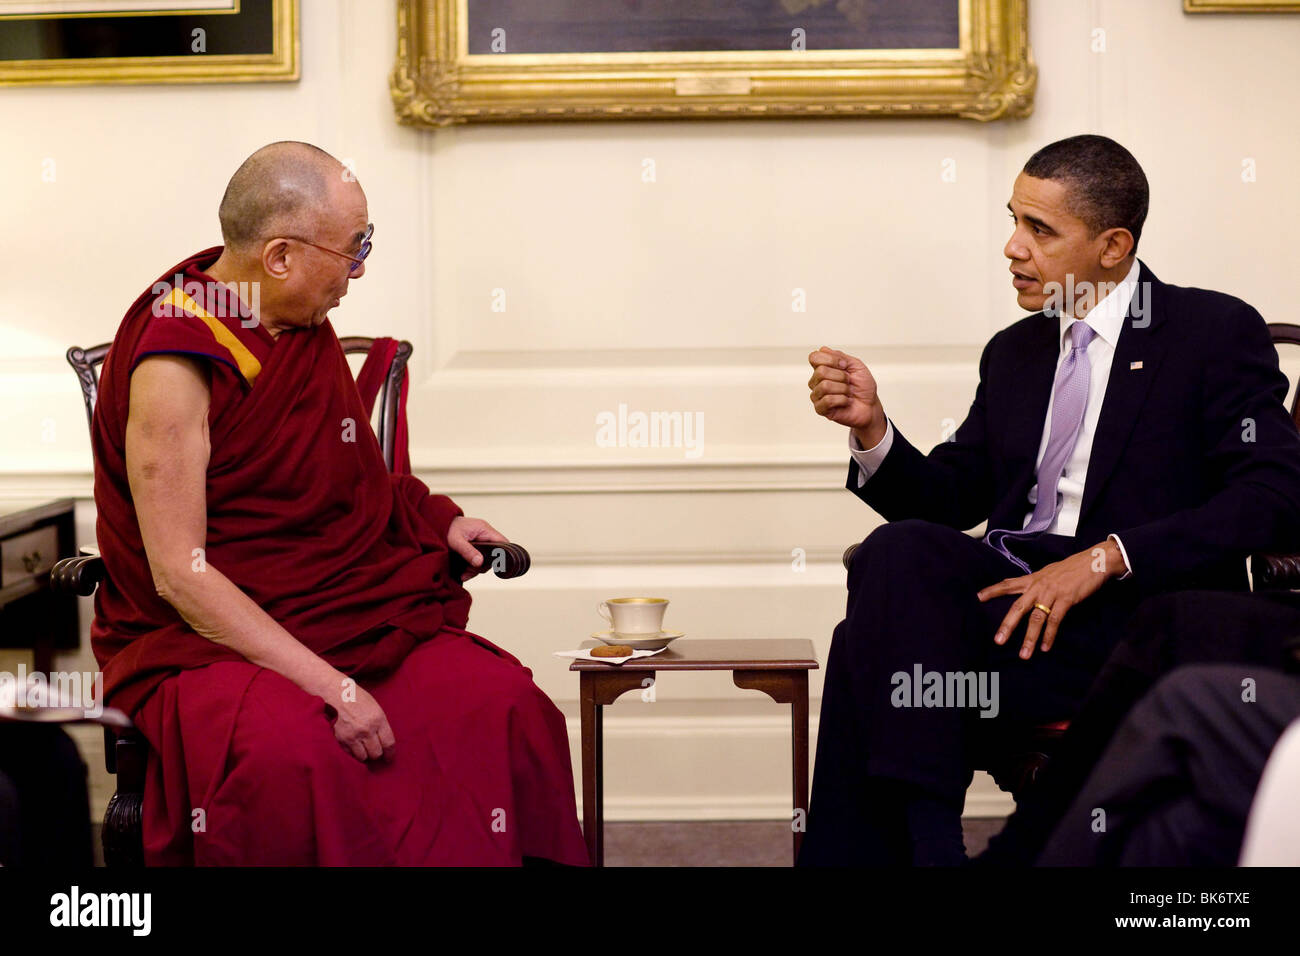 Präsident Barack Obama trifft mit seiner Heiligkeit dem Dalai Lama in der Map Room des weißen Hauses, 18. Februar 2010. Stockfoto